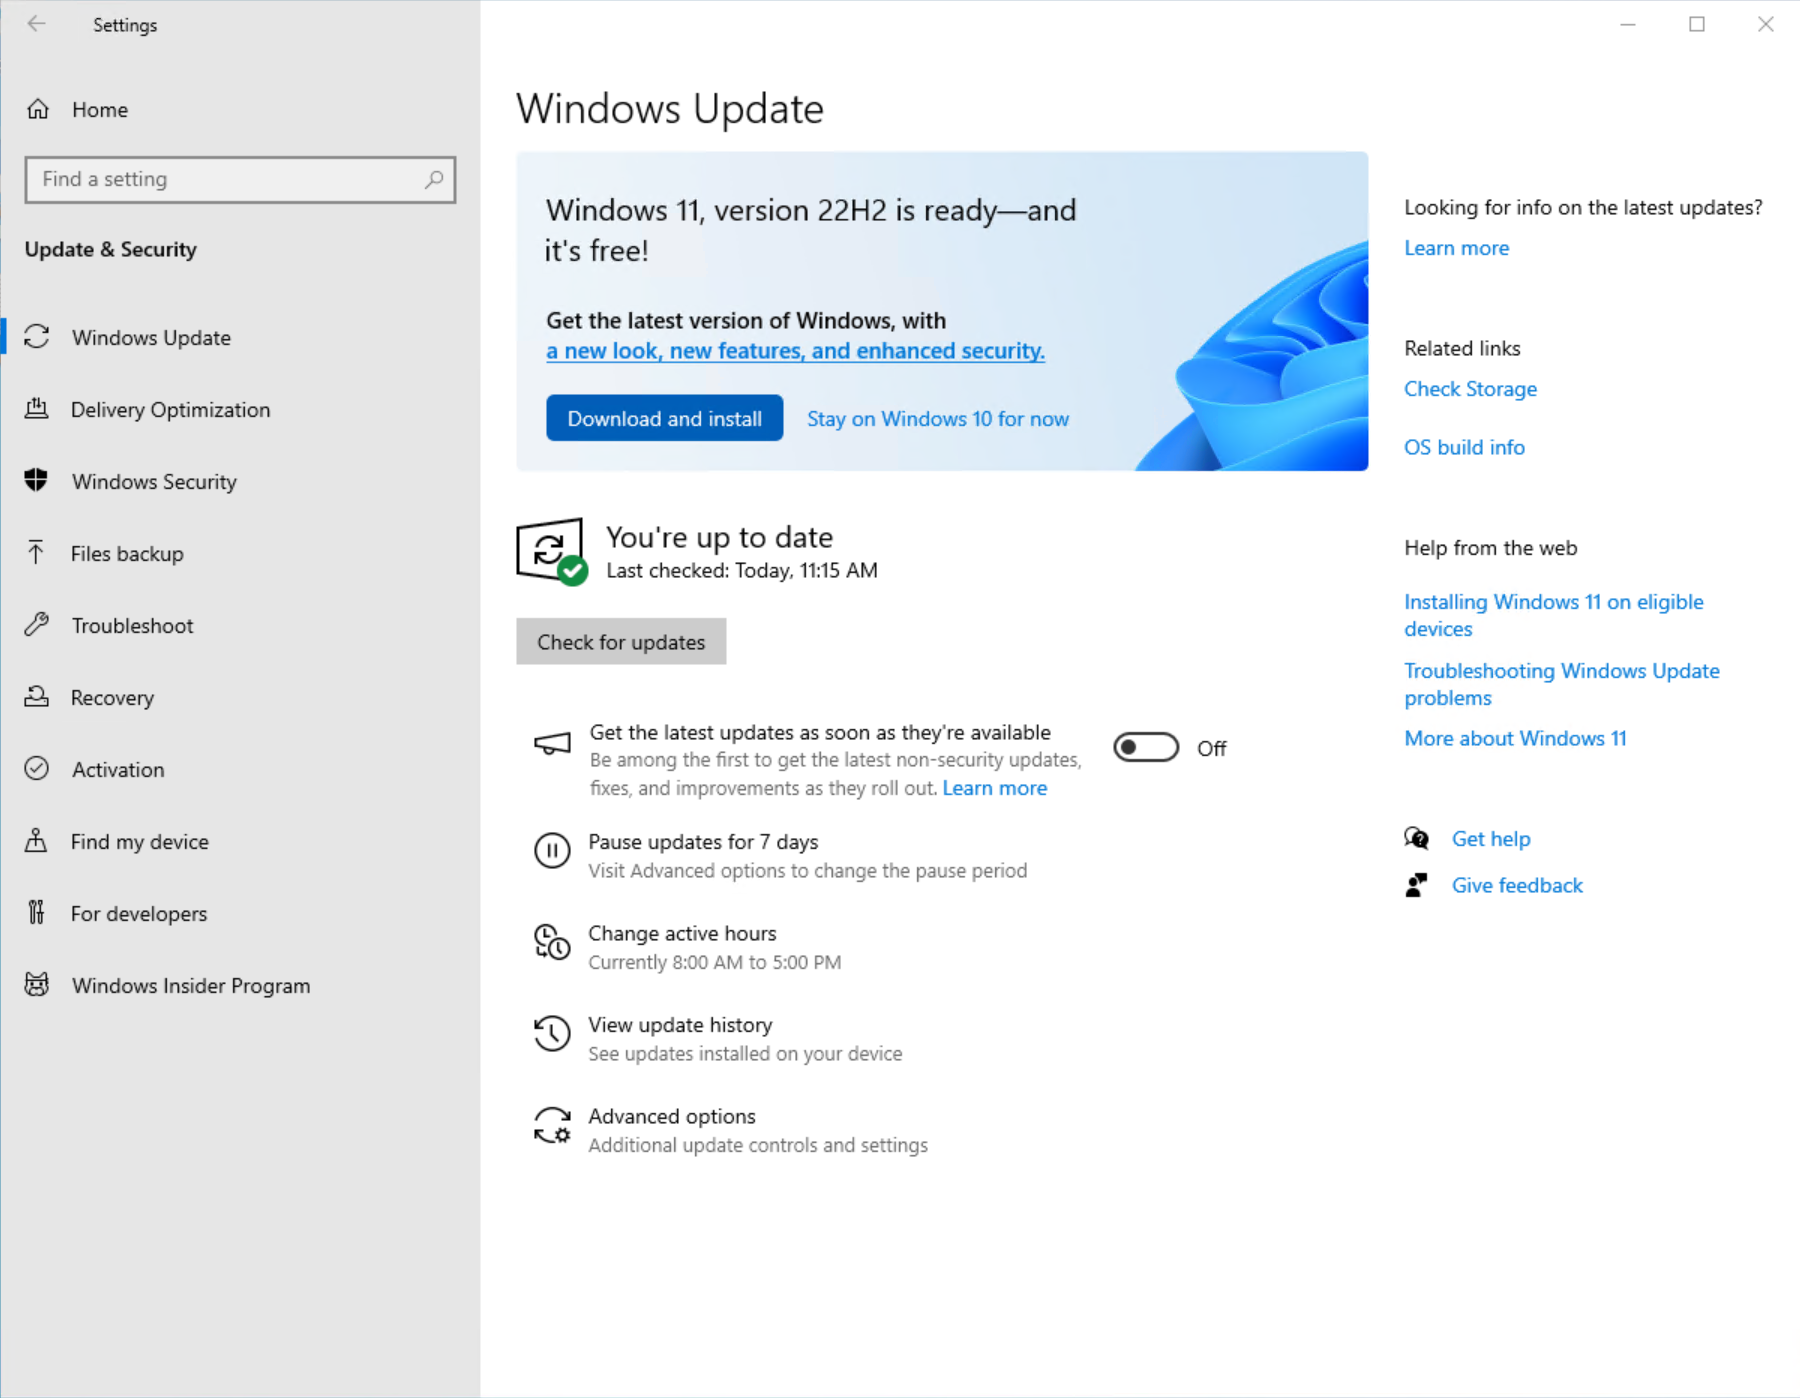 สกรีนช็อตของหน้า Windows Update ในการตั้งค่าที่แสดงว่า Windows 11 พร้อมที่จะดาวน์โหลดและติดตั้งแล้ว